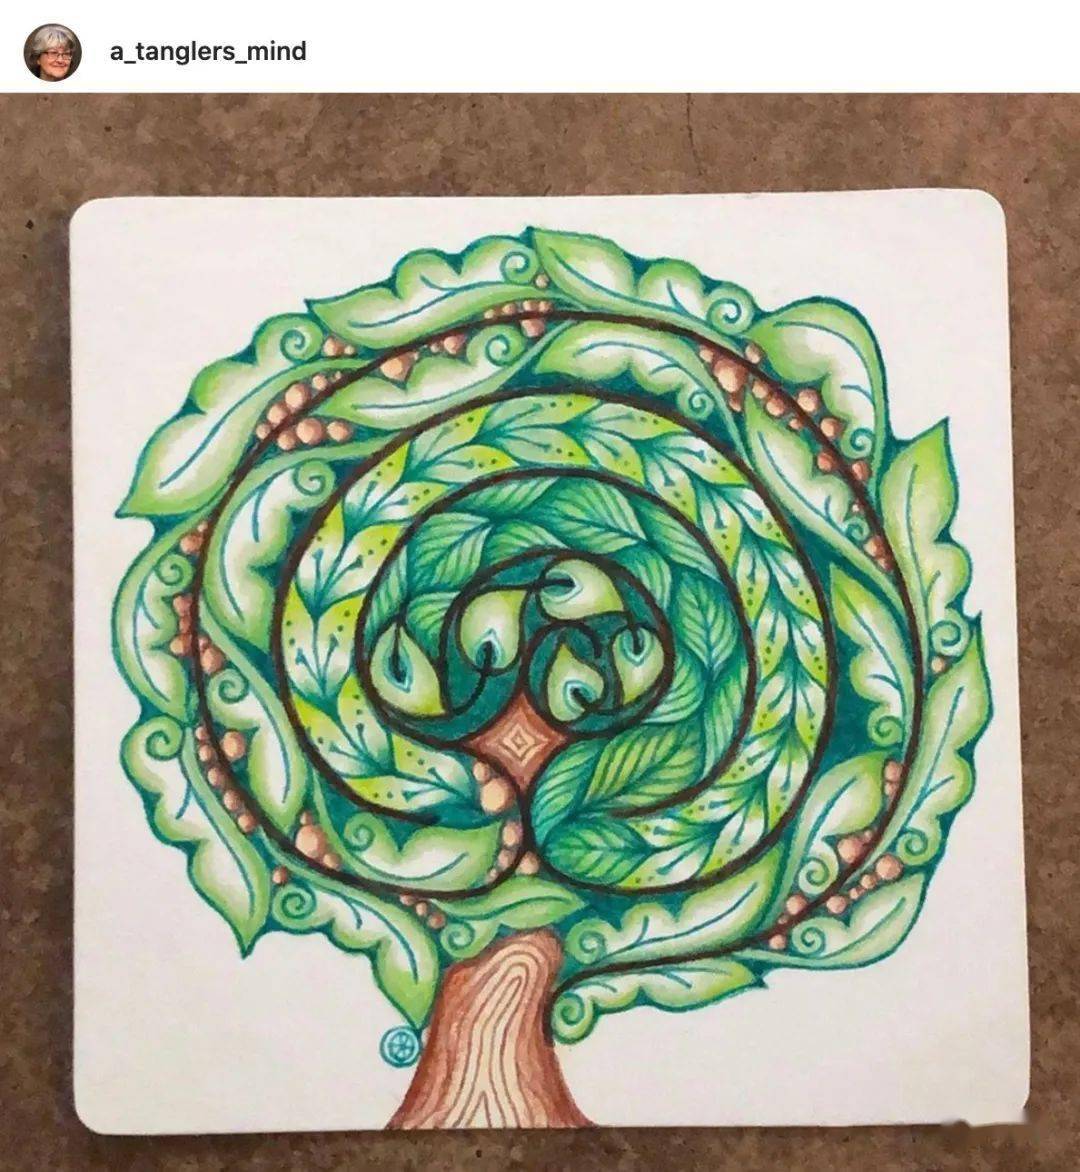 禅绕小知识:生命之树迷宫(tree of life labyrinth)